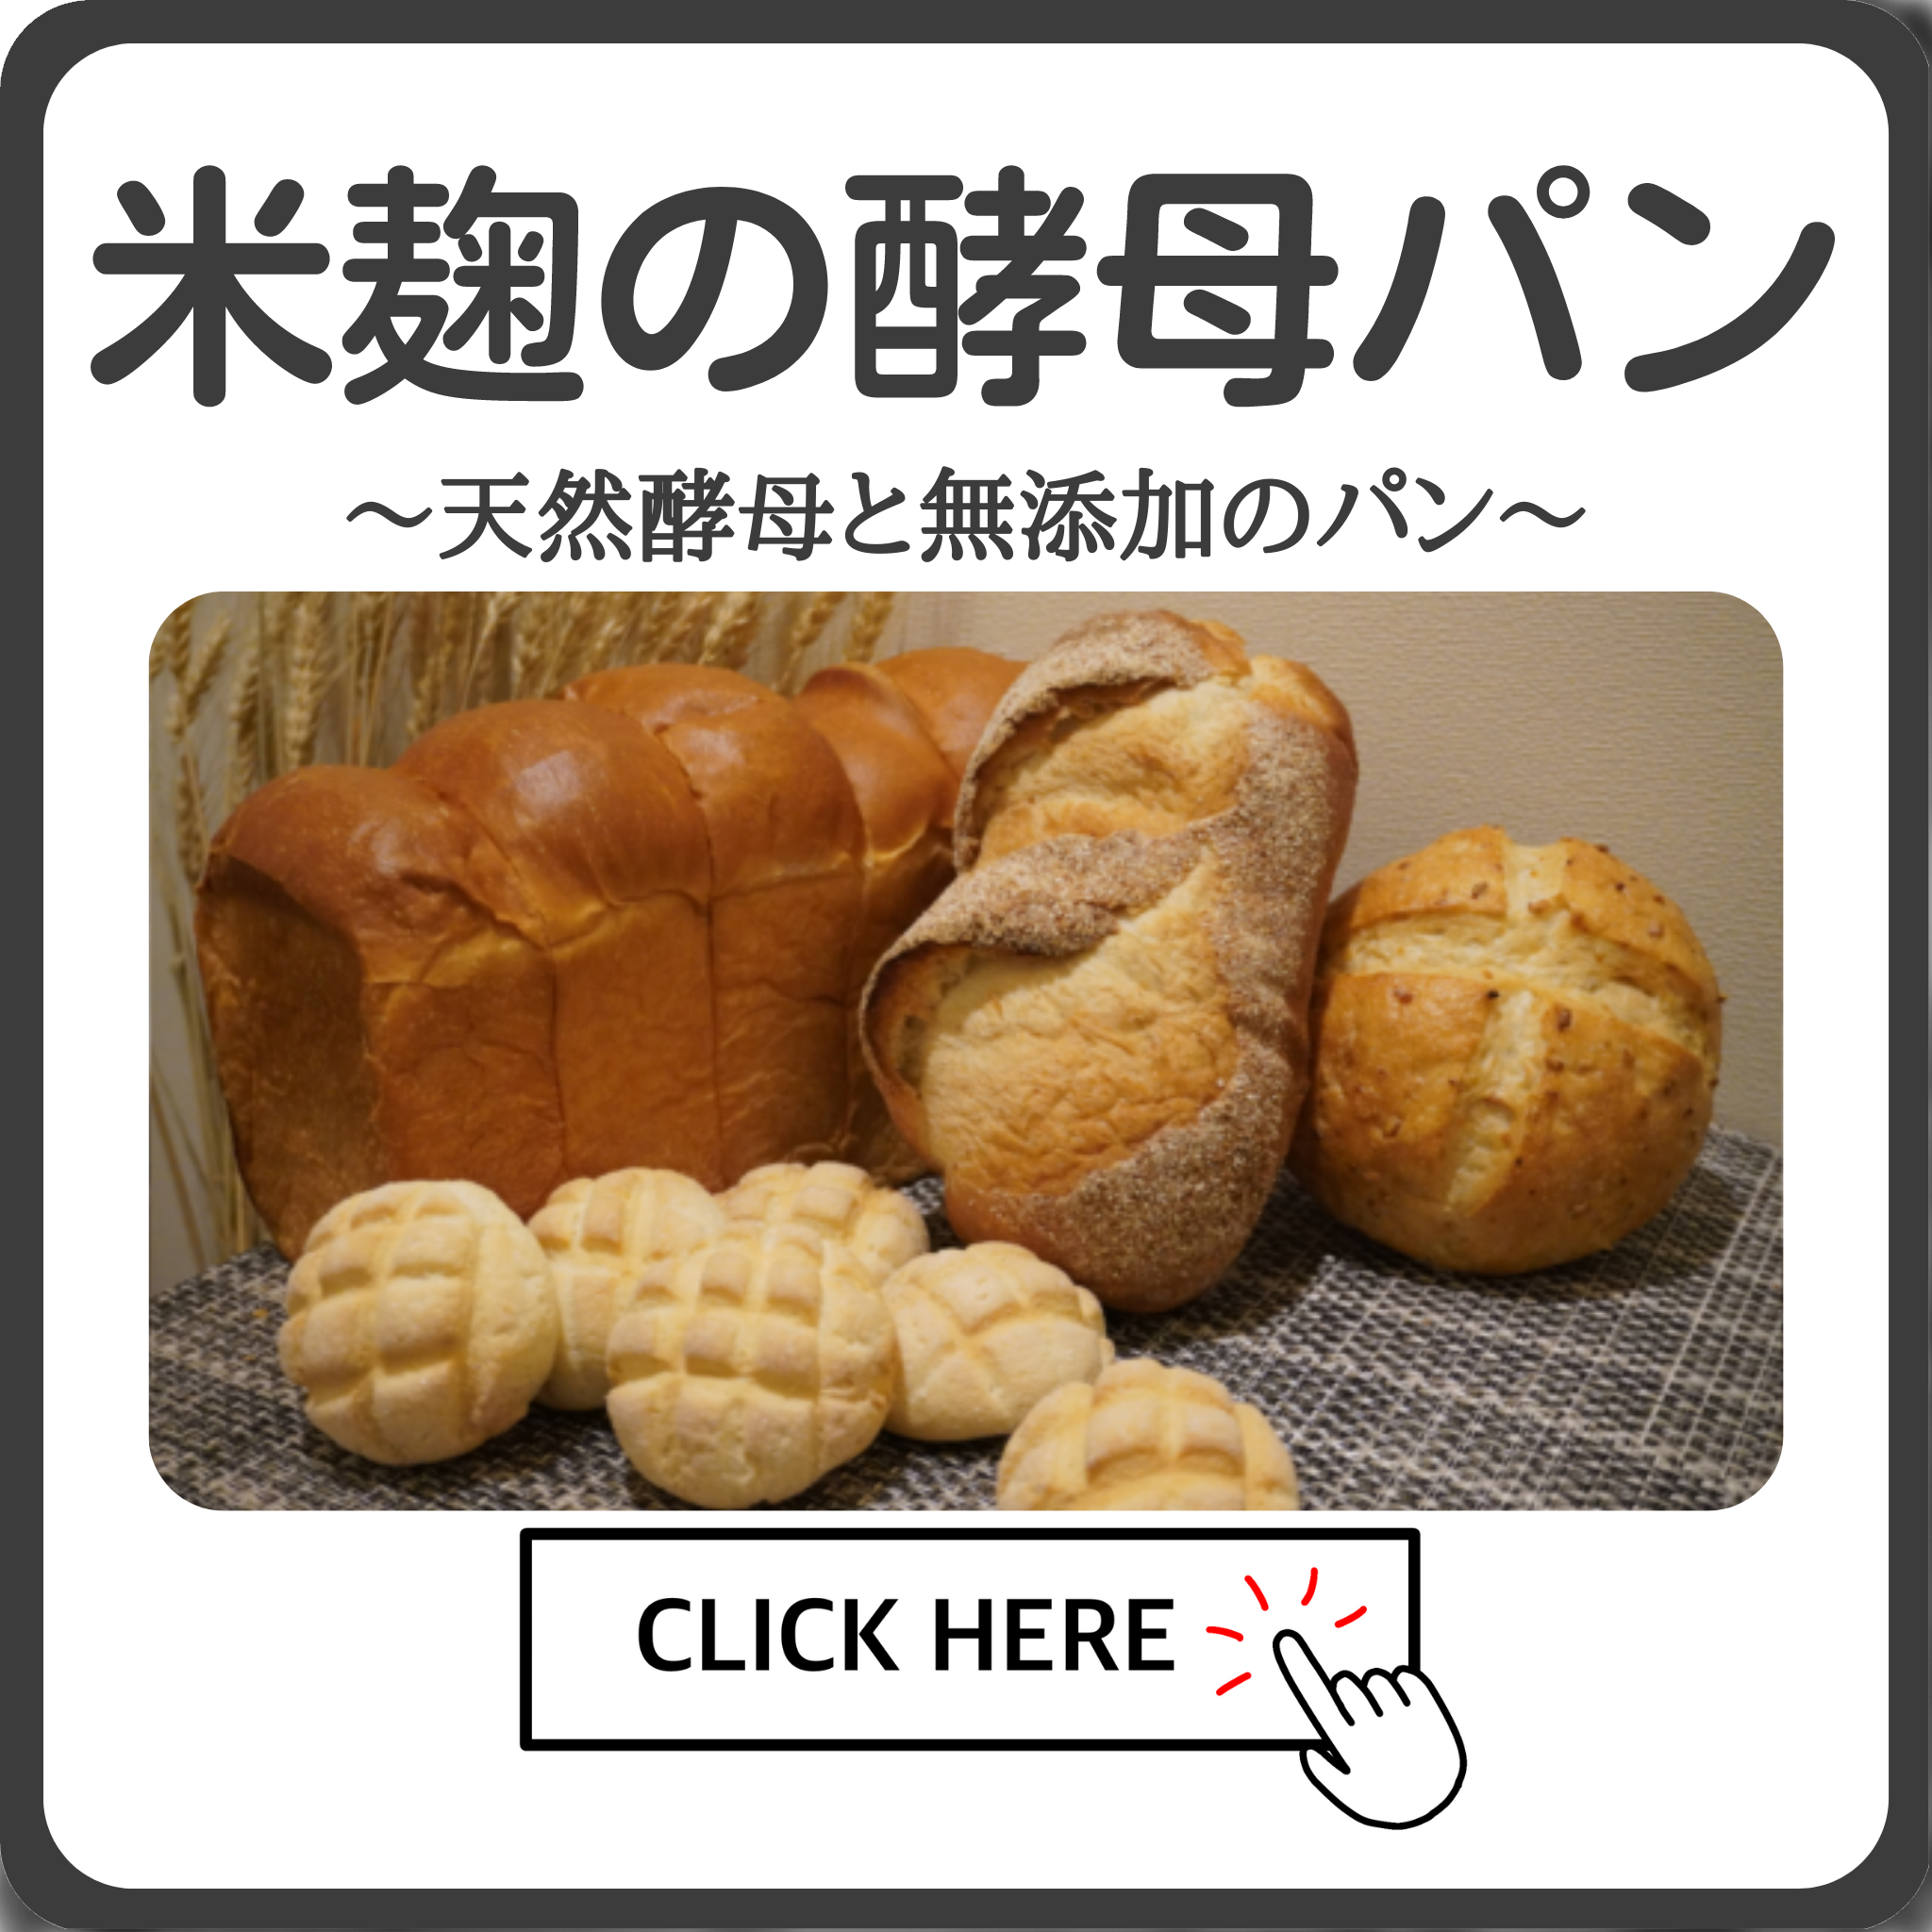 天然酵母と無添加のパン